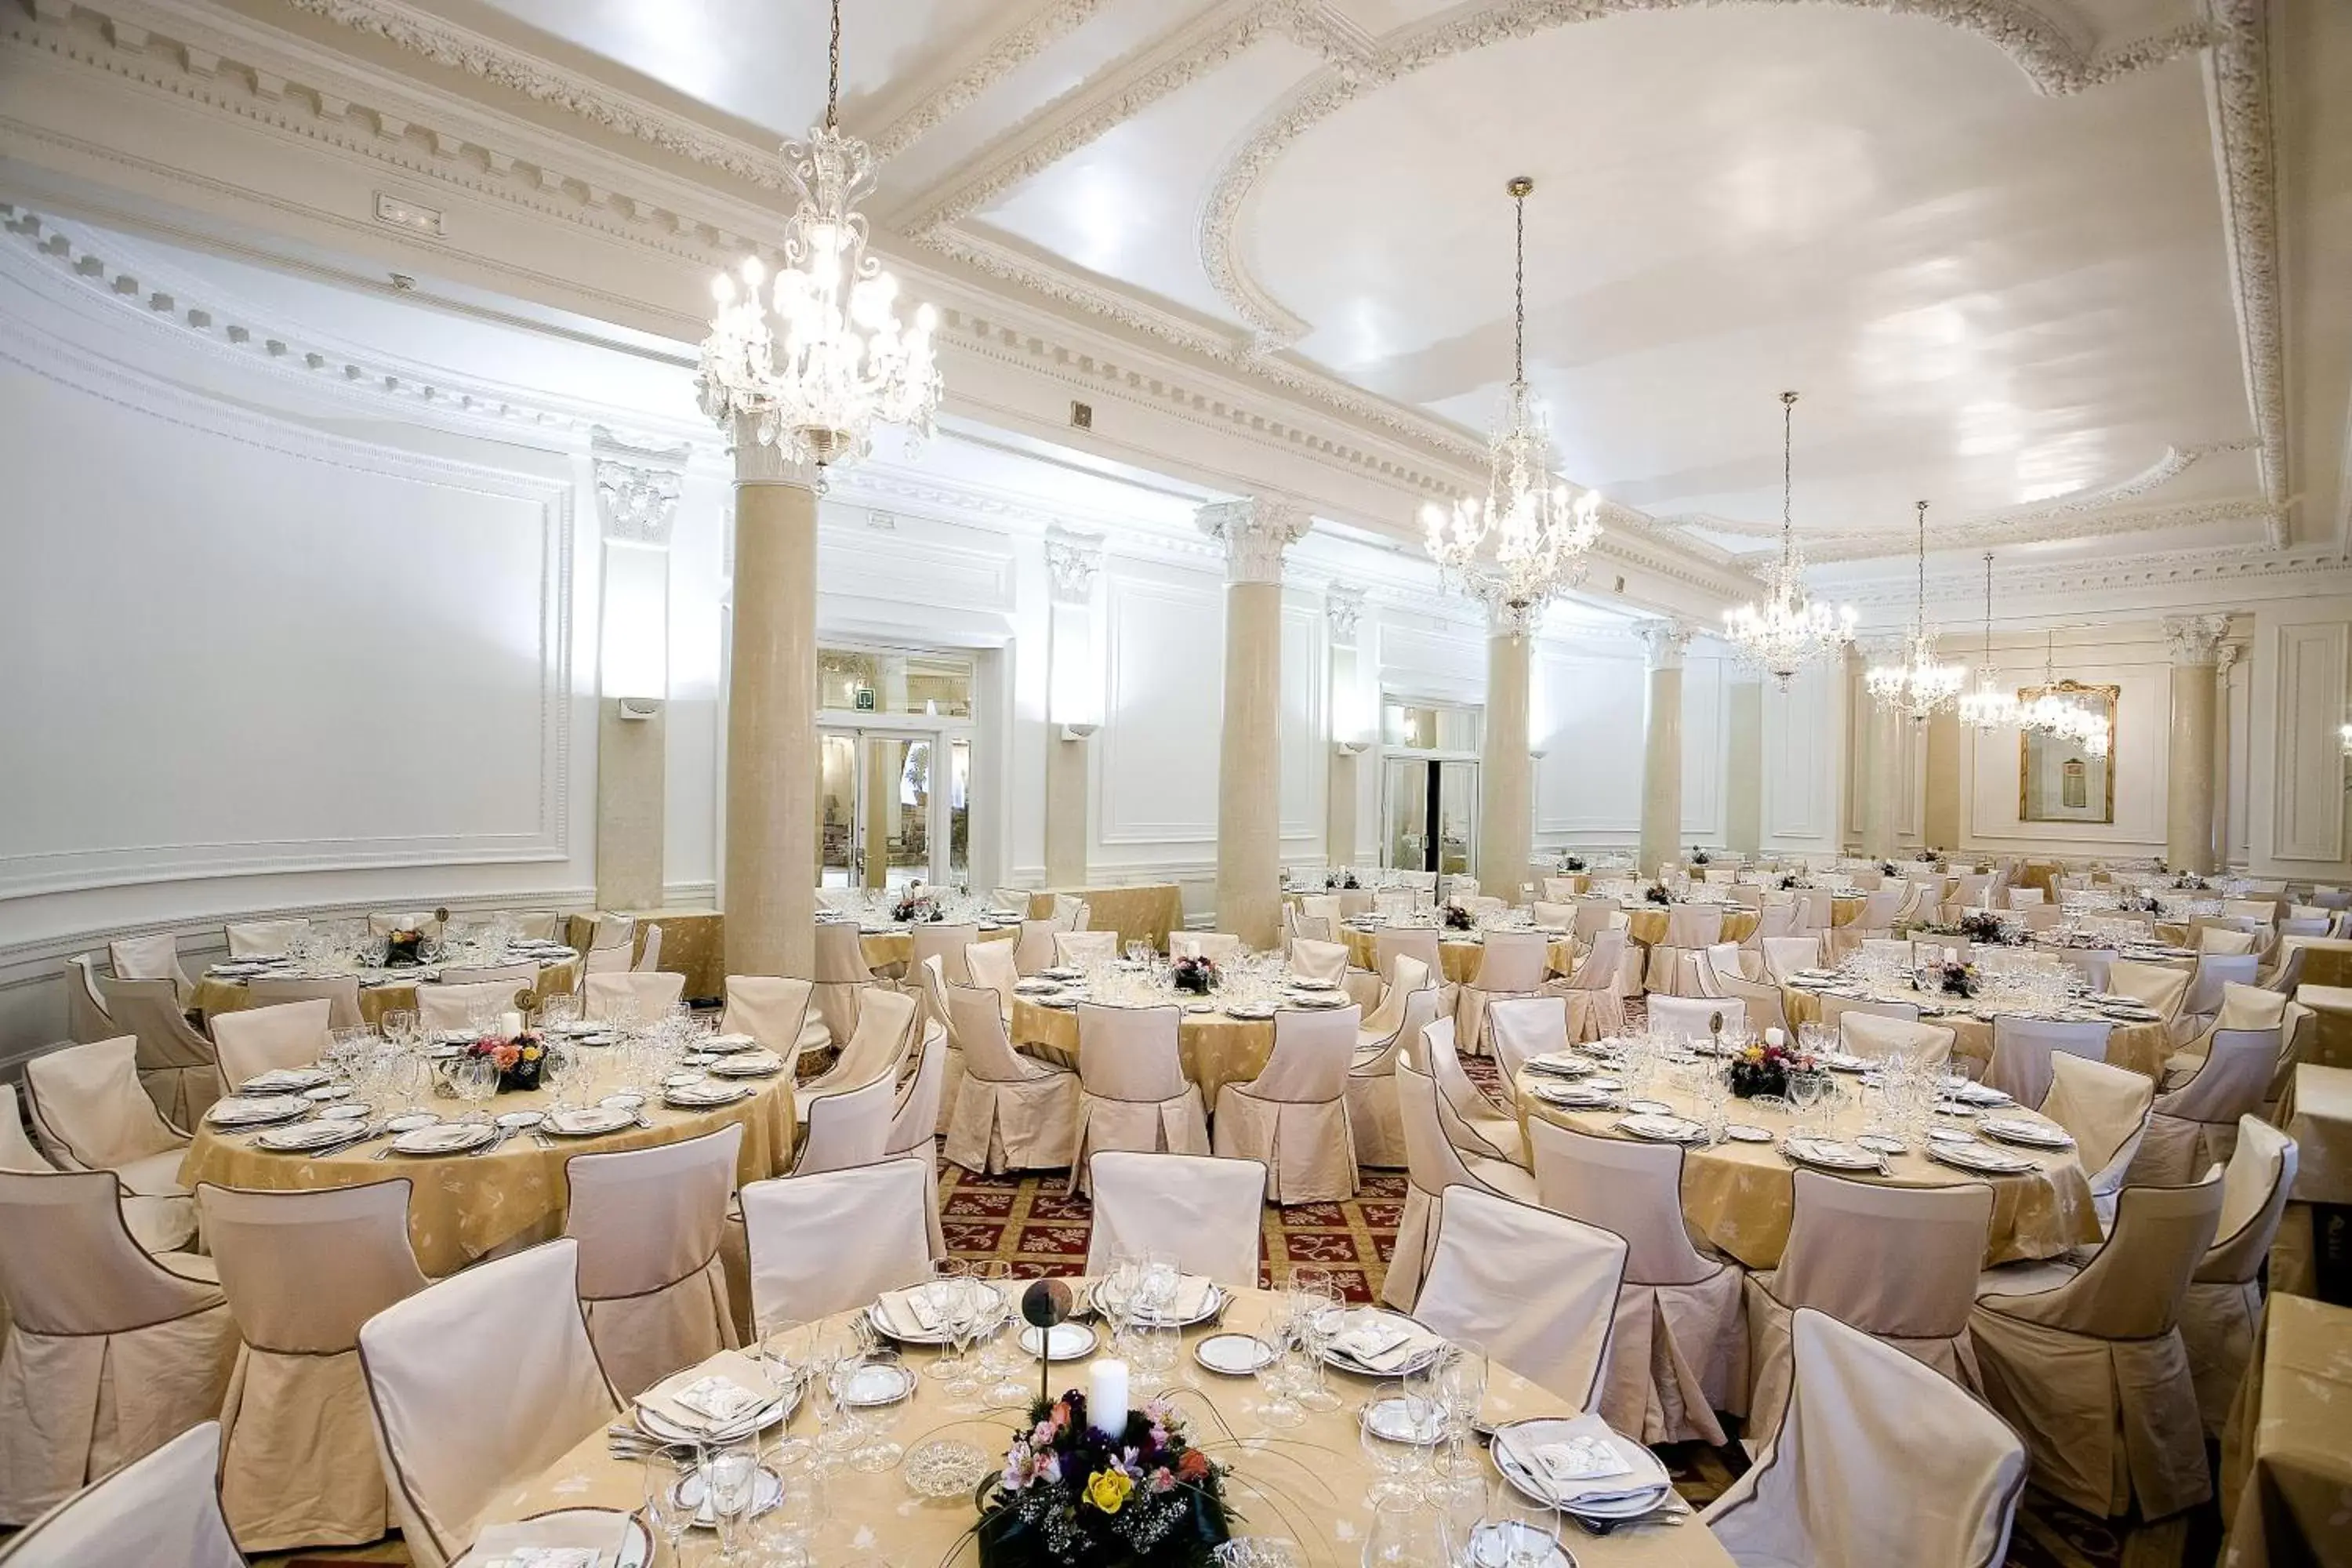 Banquet/Function facilities, Banquet Facilities in Hotel Carlton